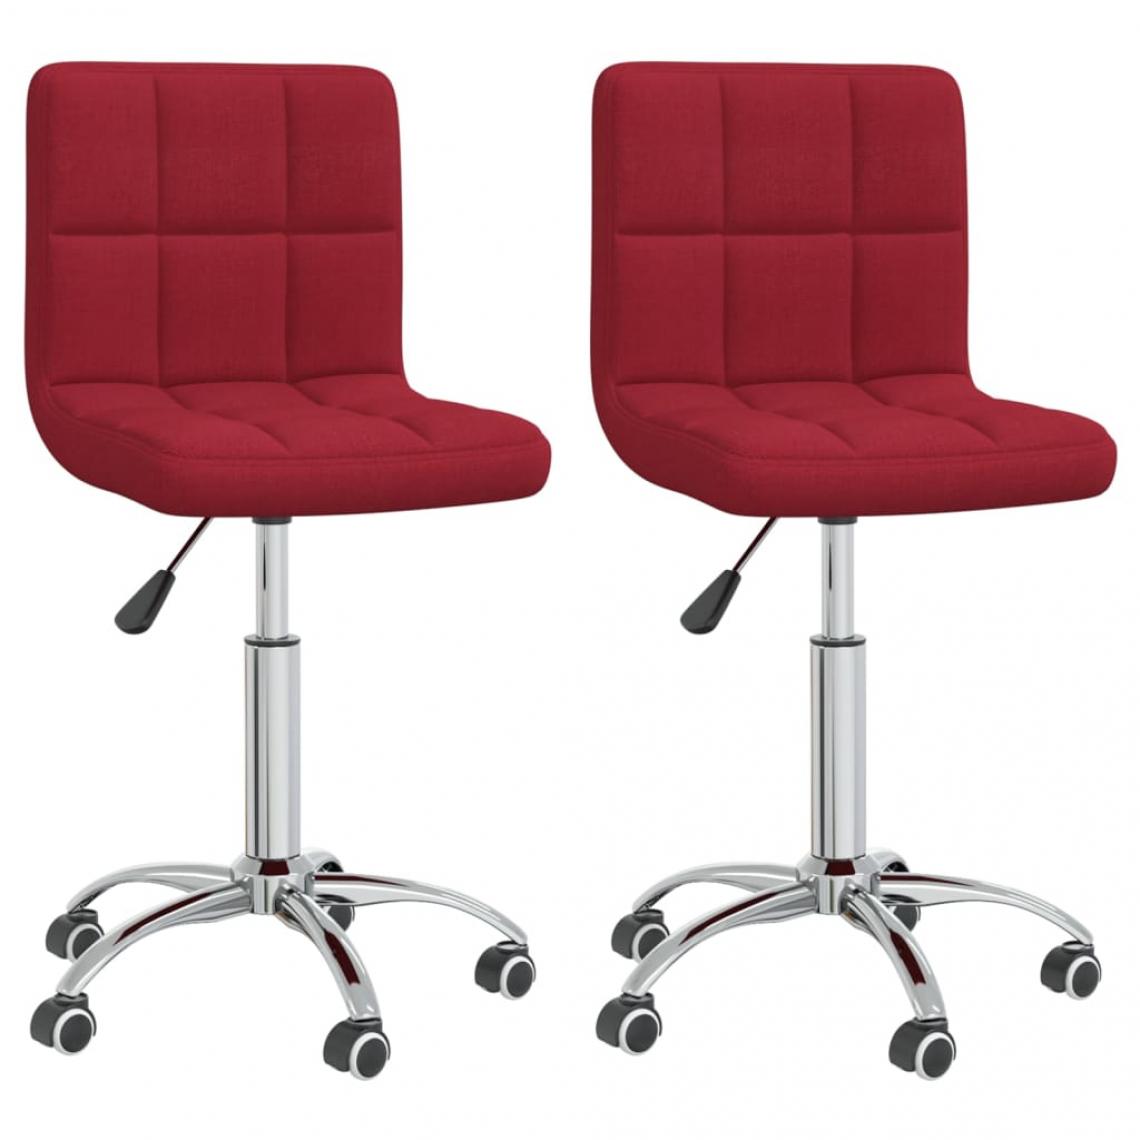 Decoshop26 - Lot de 2 chaises de salle à manger cuisine design moderne tissu rouge bordeaux CDS020984 - Chaises